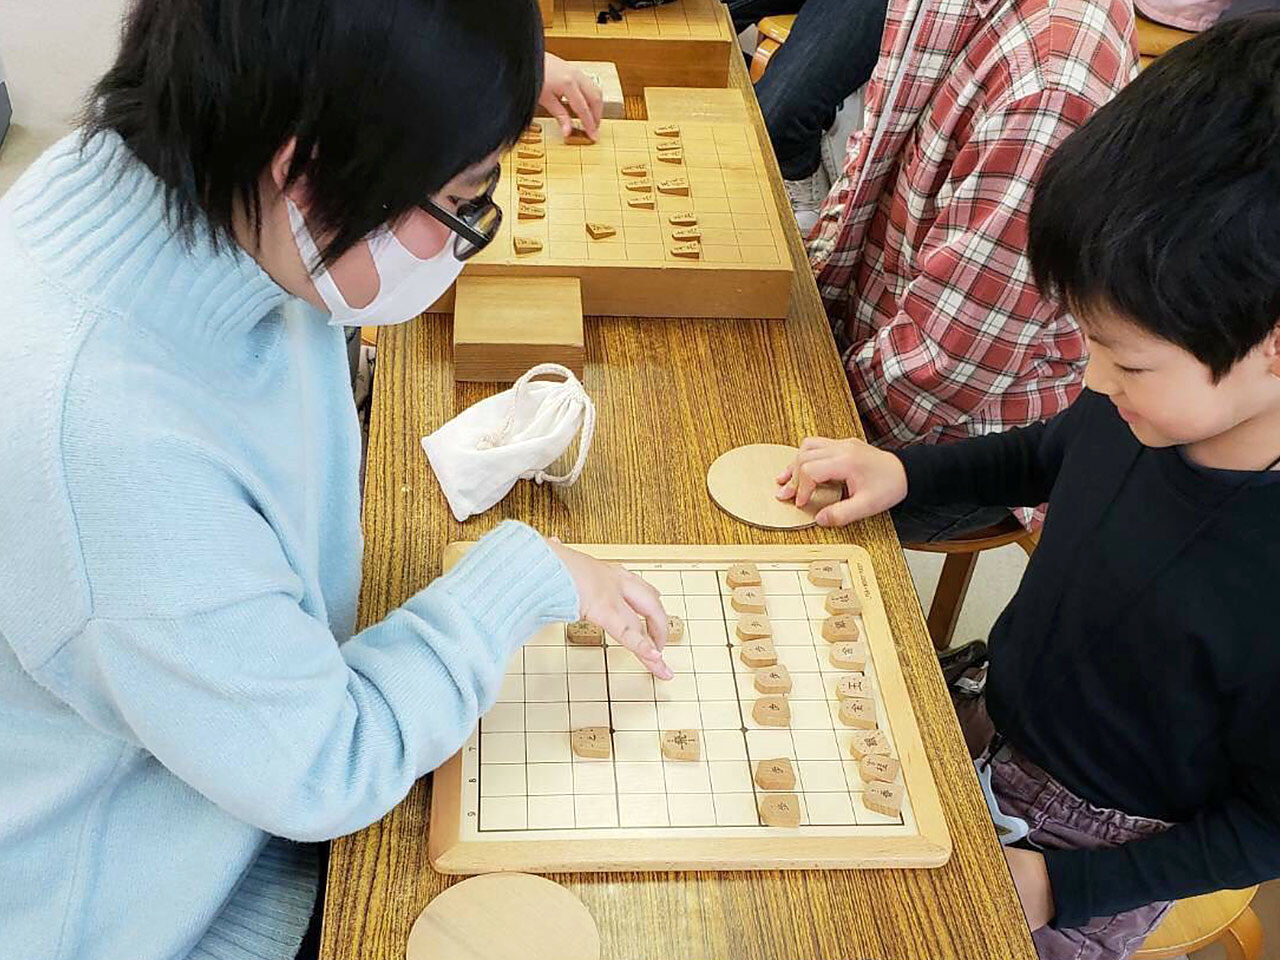 初級クラスの生徒が将棋を打っていることが分かる画像